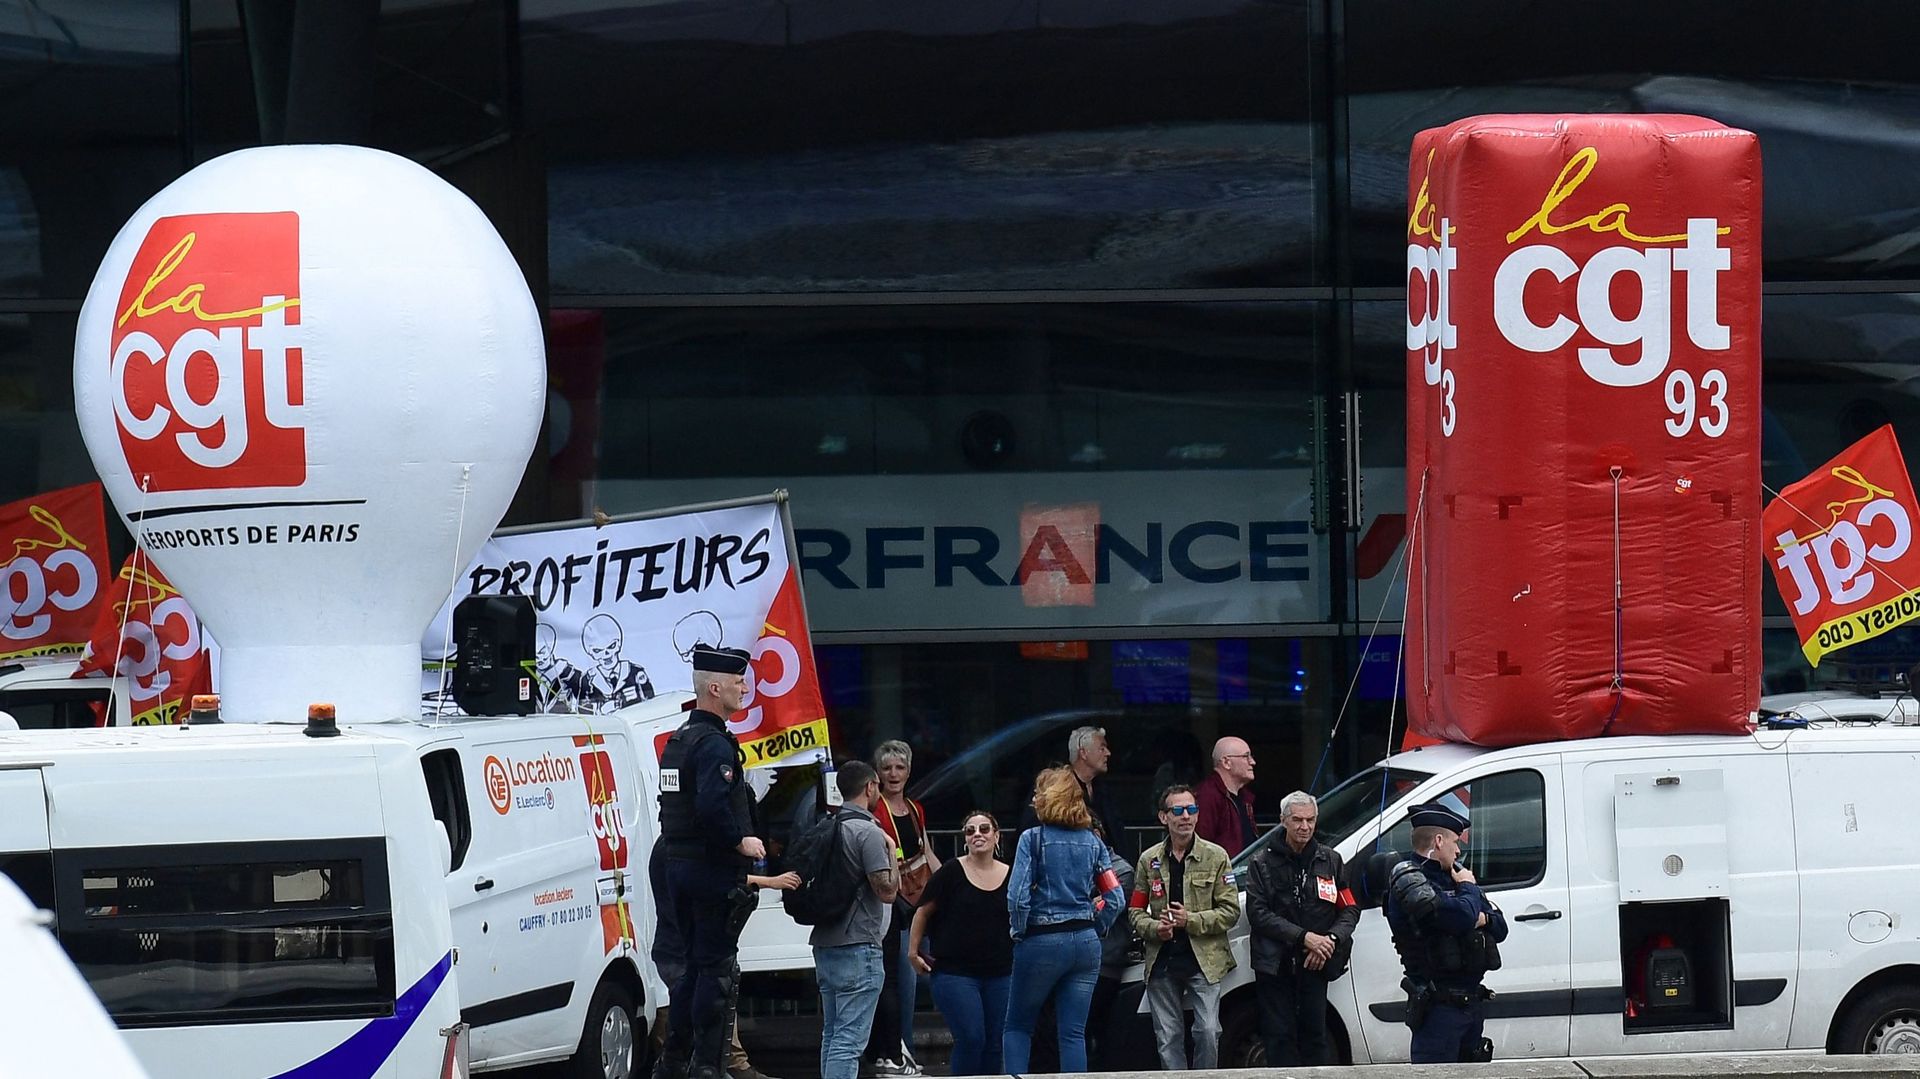 Les employés de l’aéroport de Roissy Charles De Gaulle se rassemblent devant un terminal alors qu’ils organisent une grève à l’aéroport de Roissy Charles De Gaulle, au nord de Paris, le 1er juillet 2022. BERTRAND GUAY / AFP